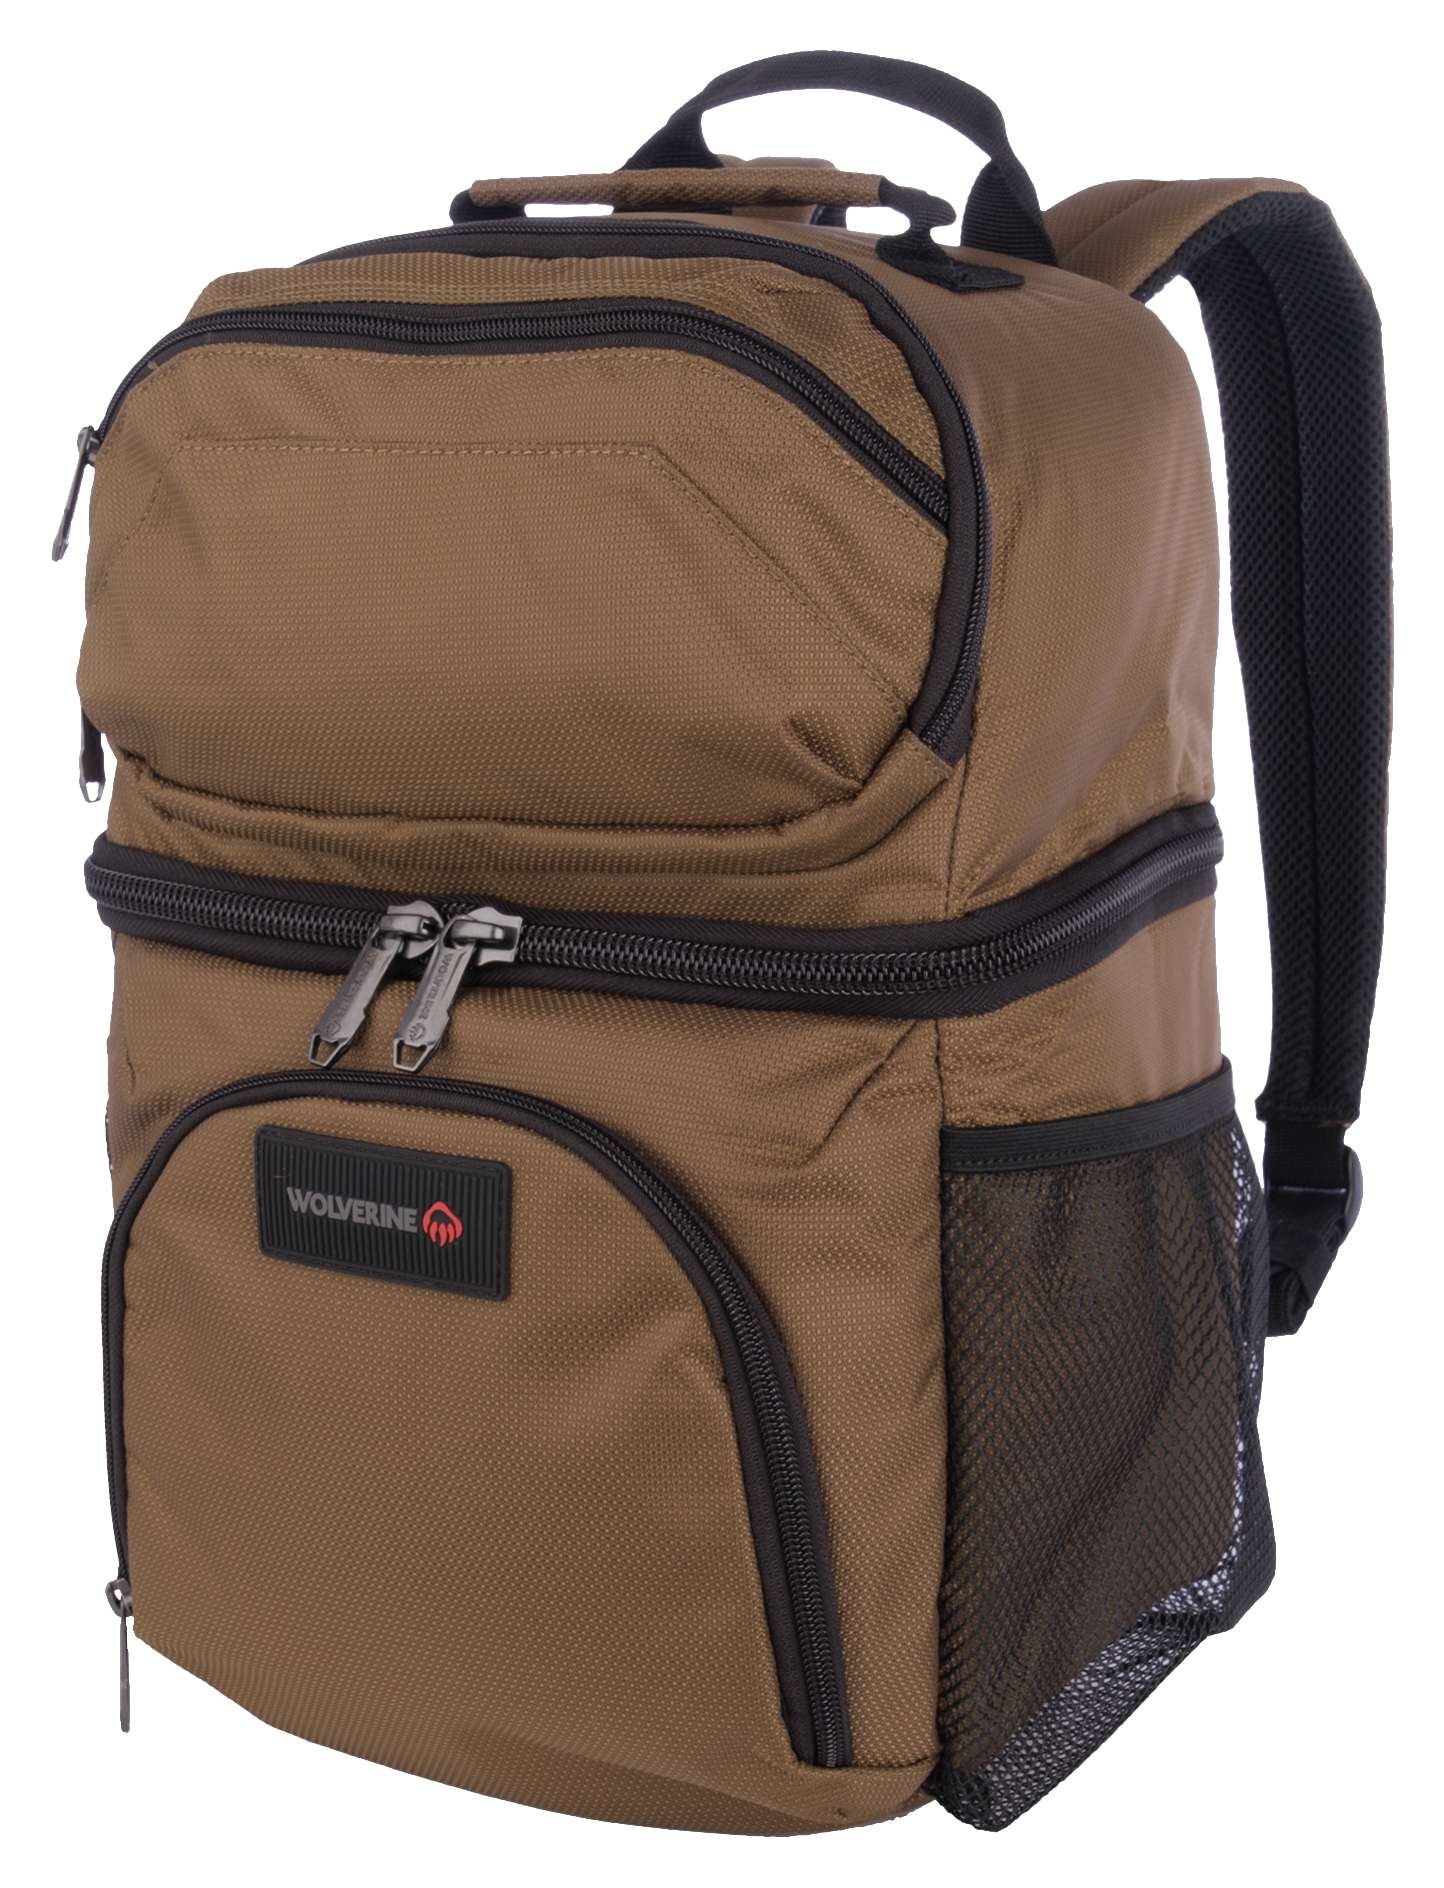 Wolverine 18-Can Cooler Backpack - Chestnut